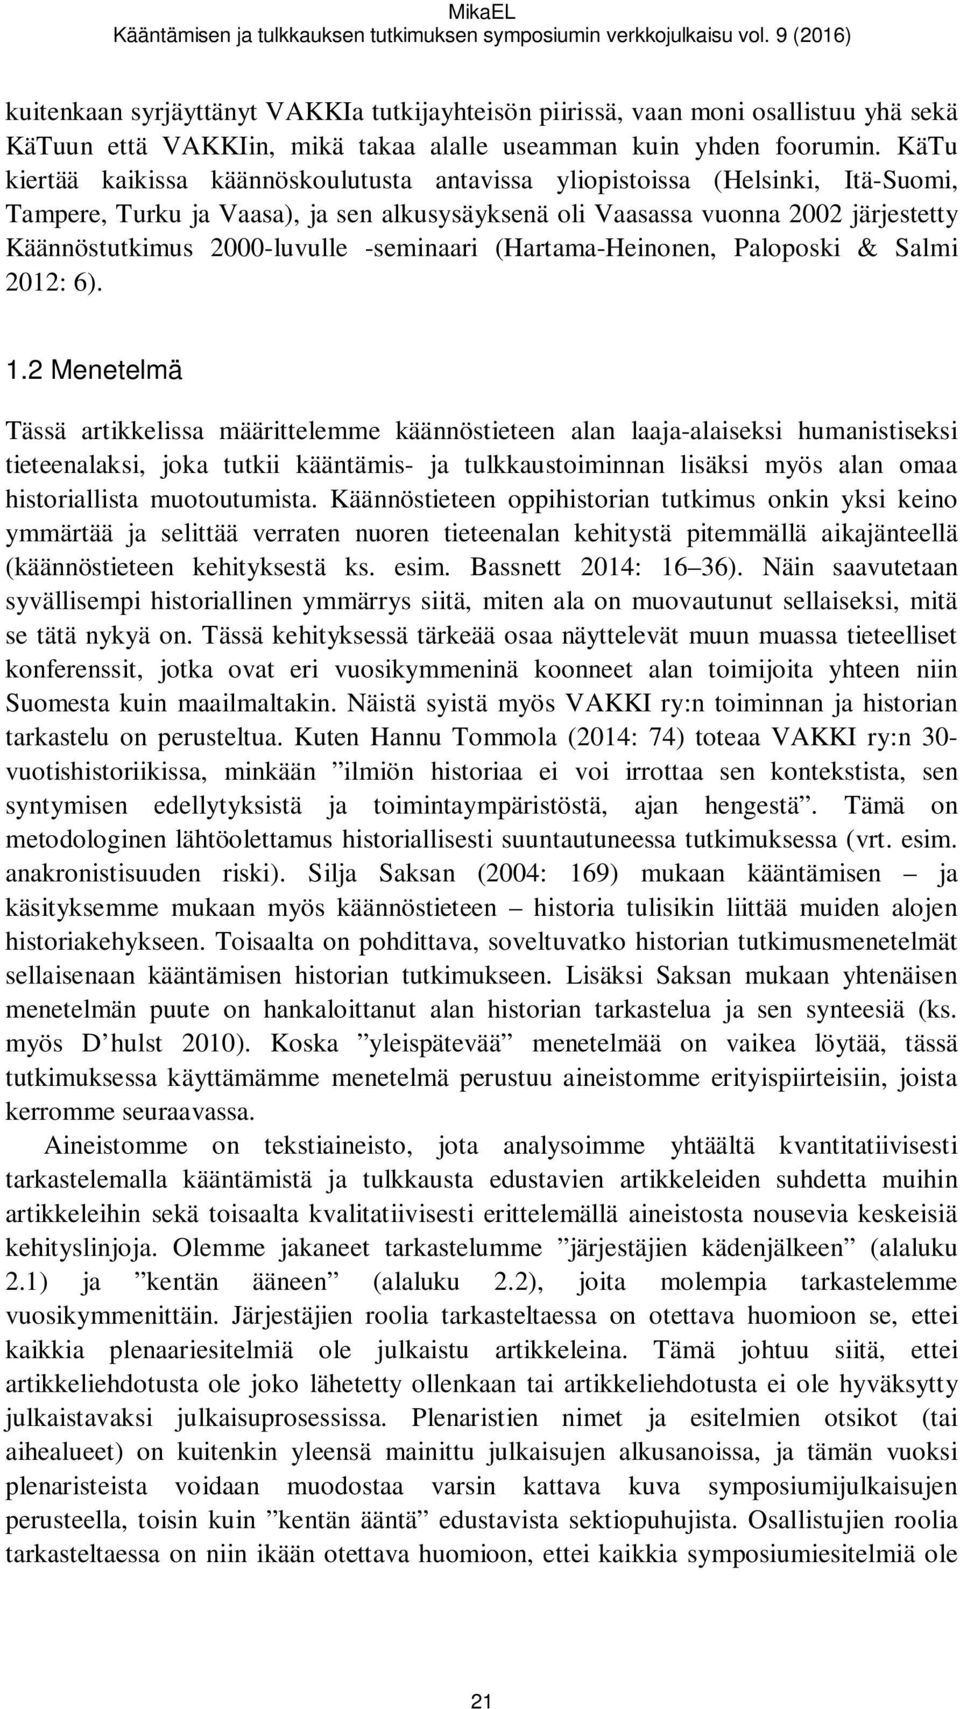 KäTu kiertää kaikissa käännöskoulutusta antavissa yliopistoissa (Helsinki, Itä-Suomi, Tampere, Turku ja Vaasa), ja sen alkusysäyksenä oli Vaasassa vuonna 2002 järjestetty Käännöstutkimus 2000-luvulle